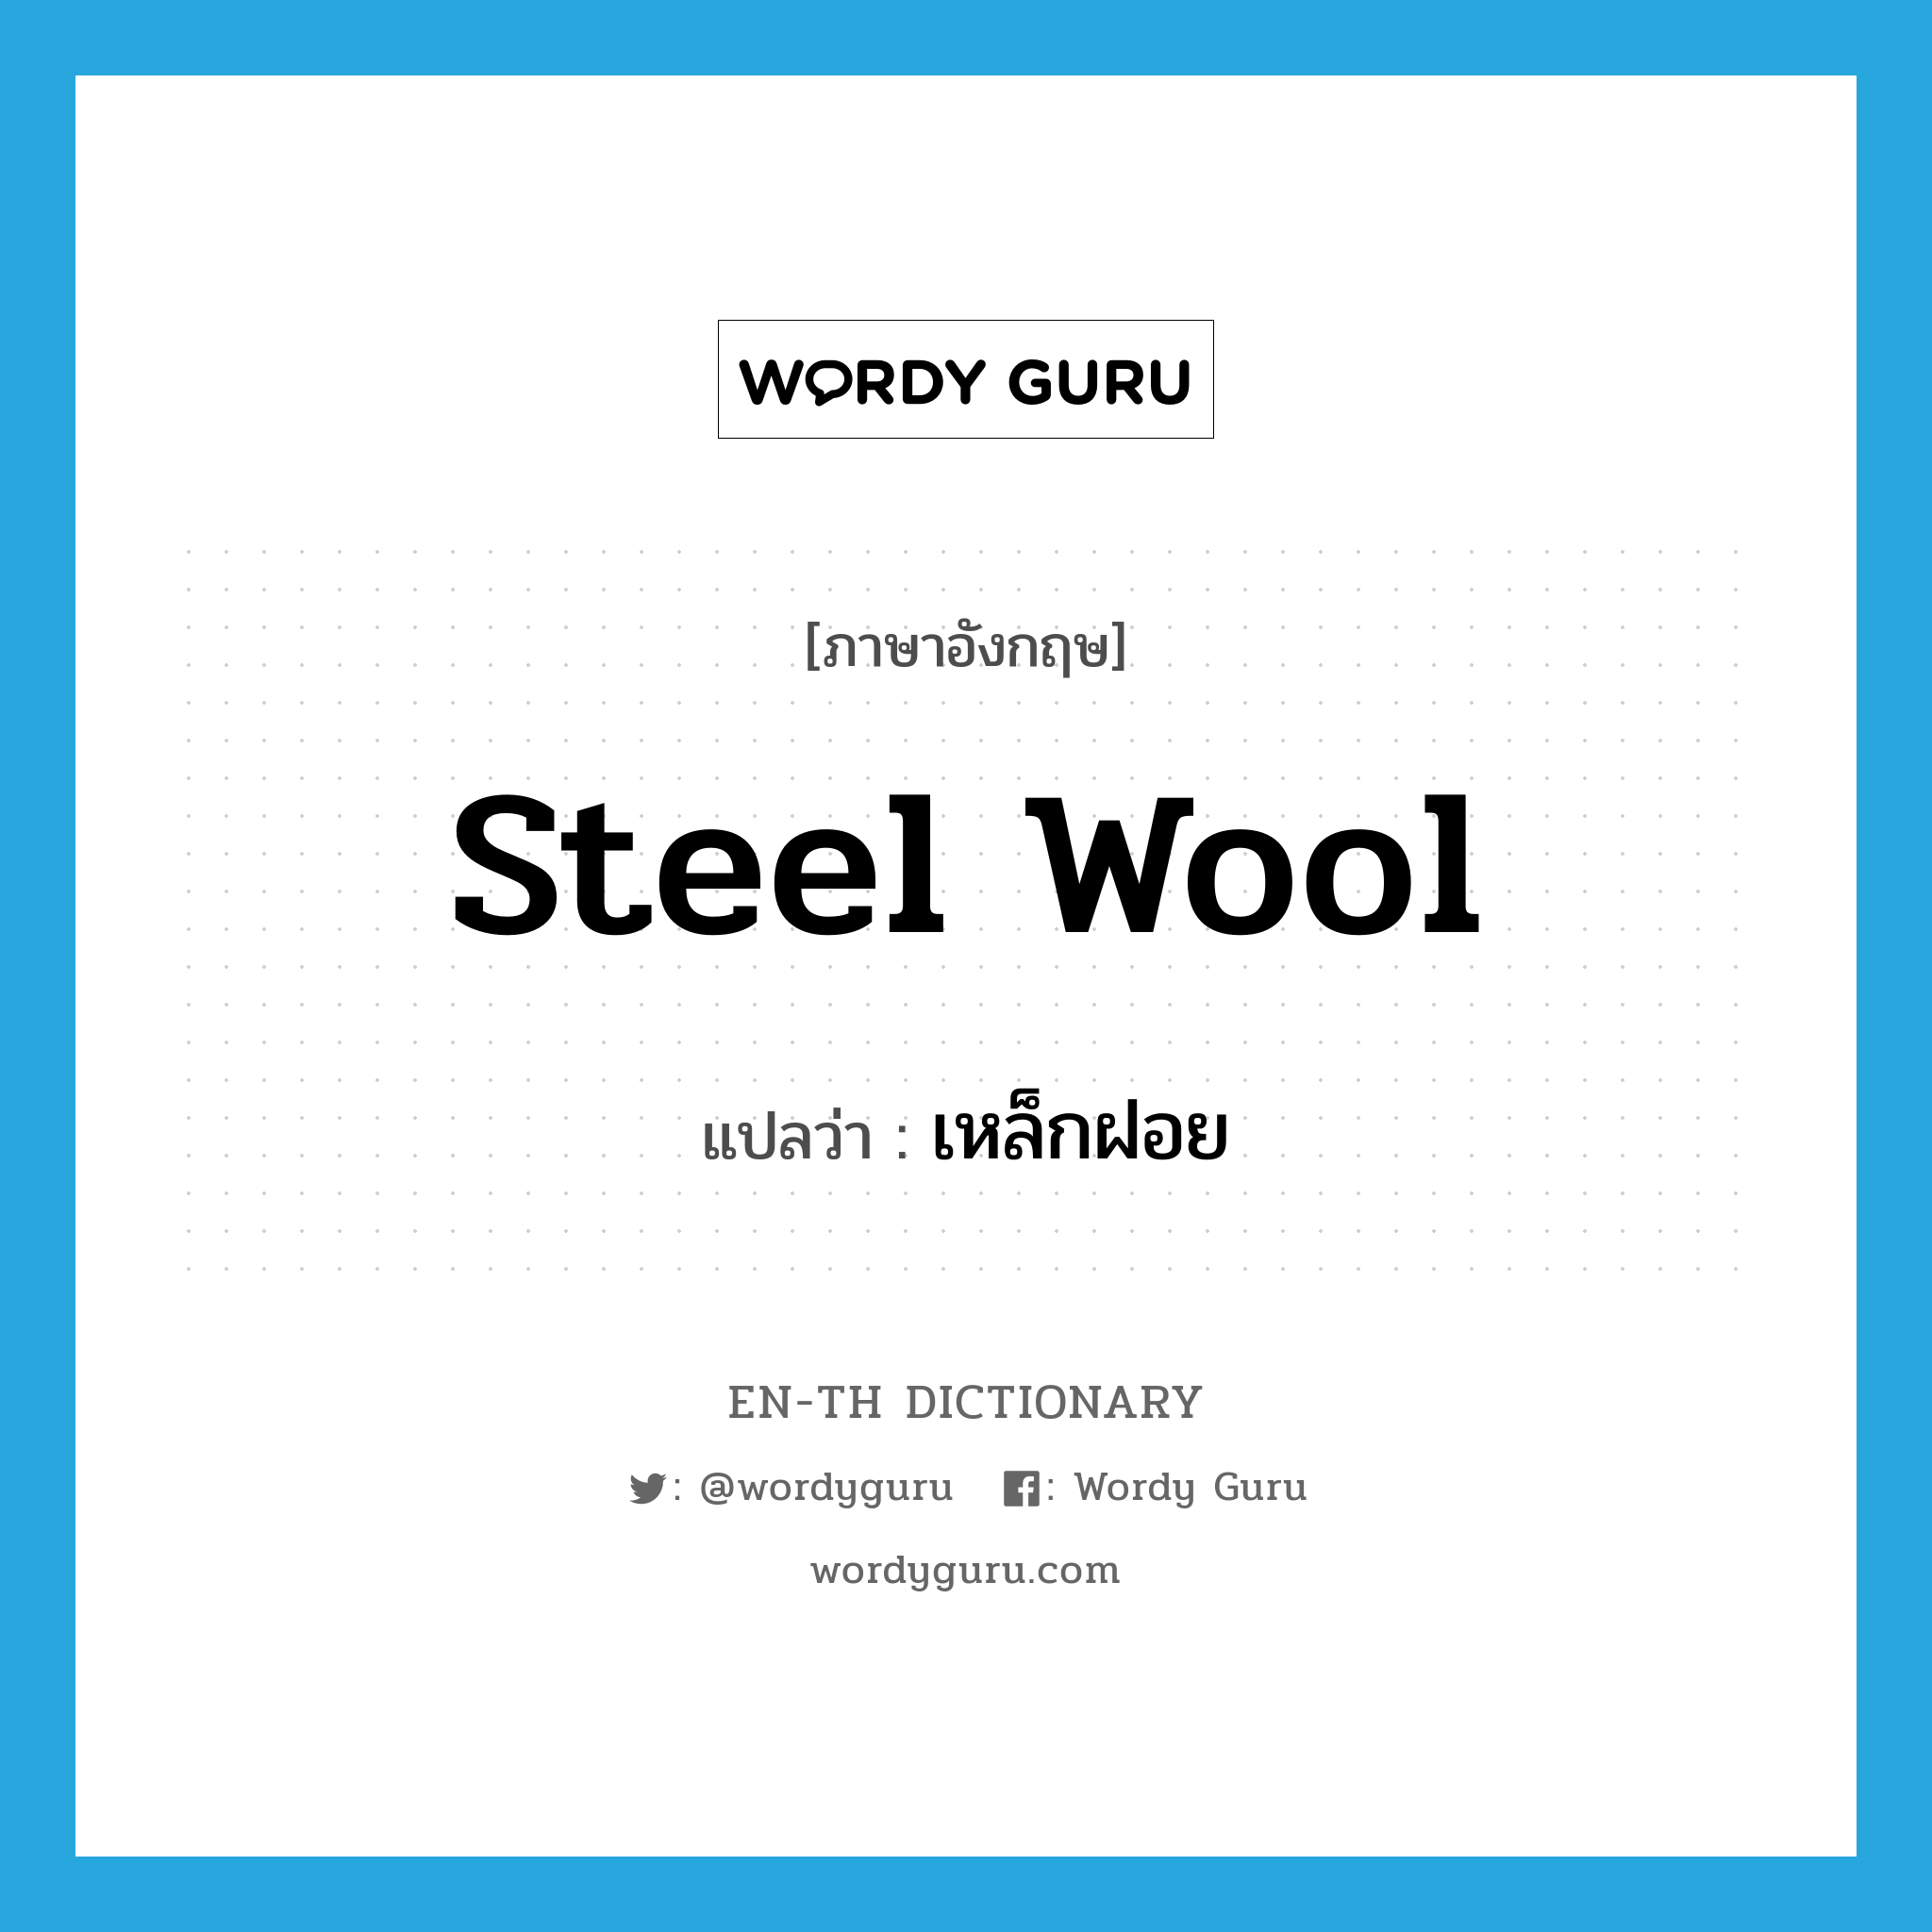 steel wool แปลว่า?, คำศัพท์ภาษาอังกฤษ steel wool แปลว่า เหล็กฝอย ประเภท N หมวด N